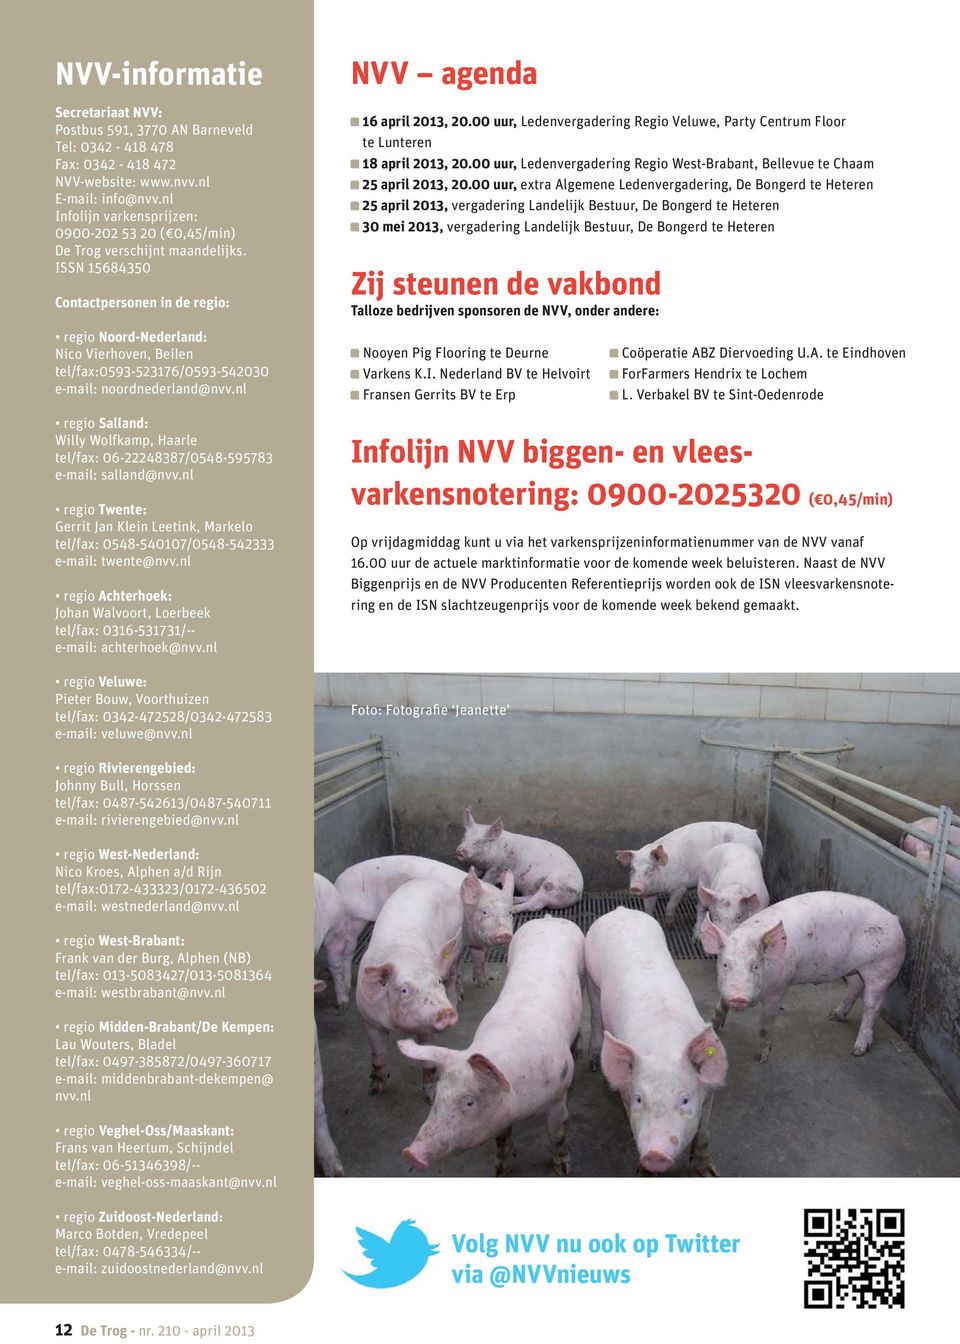 ISSN 15684350 Contactpersonen in de regio: regio Noord-Nederland: Nico Vierhoven, Beilen tel/fax:0593-523176/0593-542030 e-mail: noordnederland@nvv.